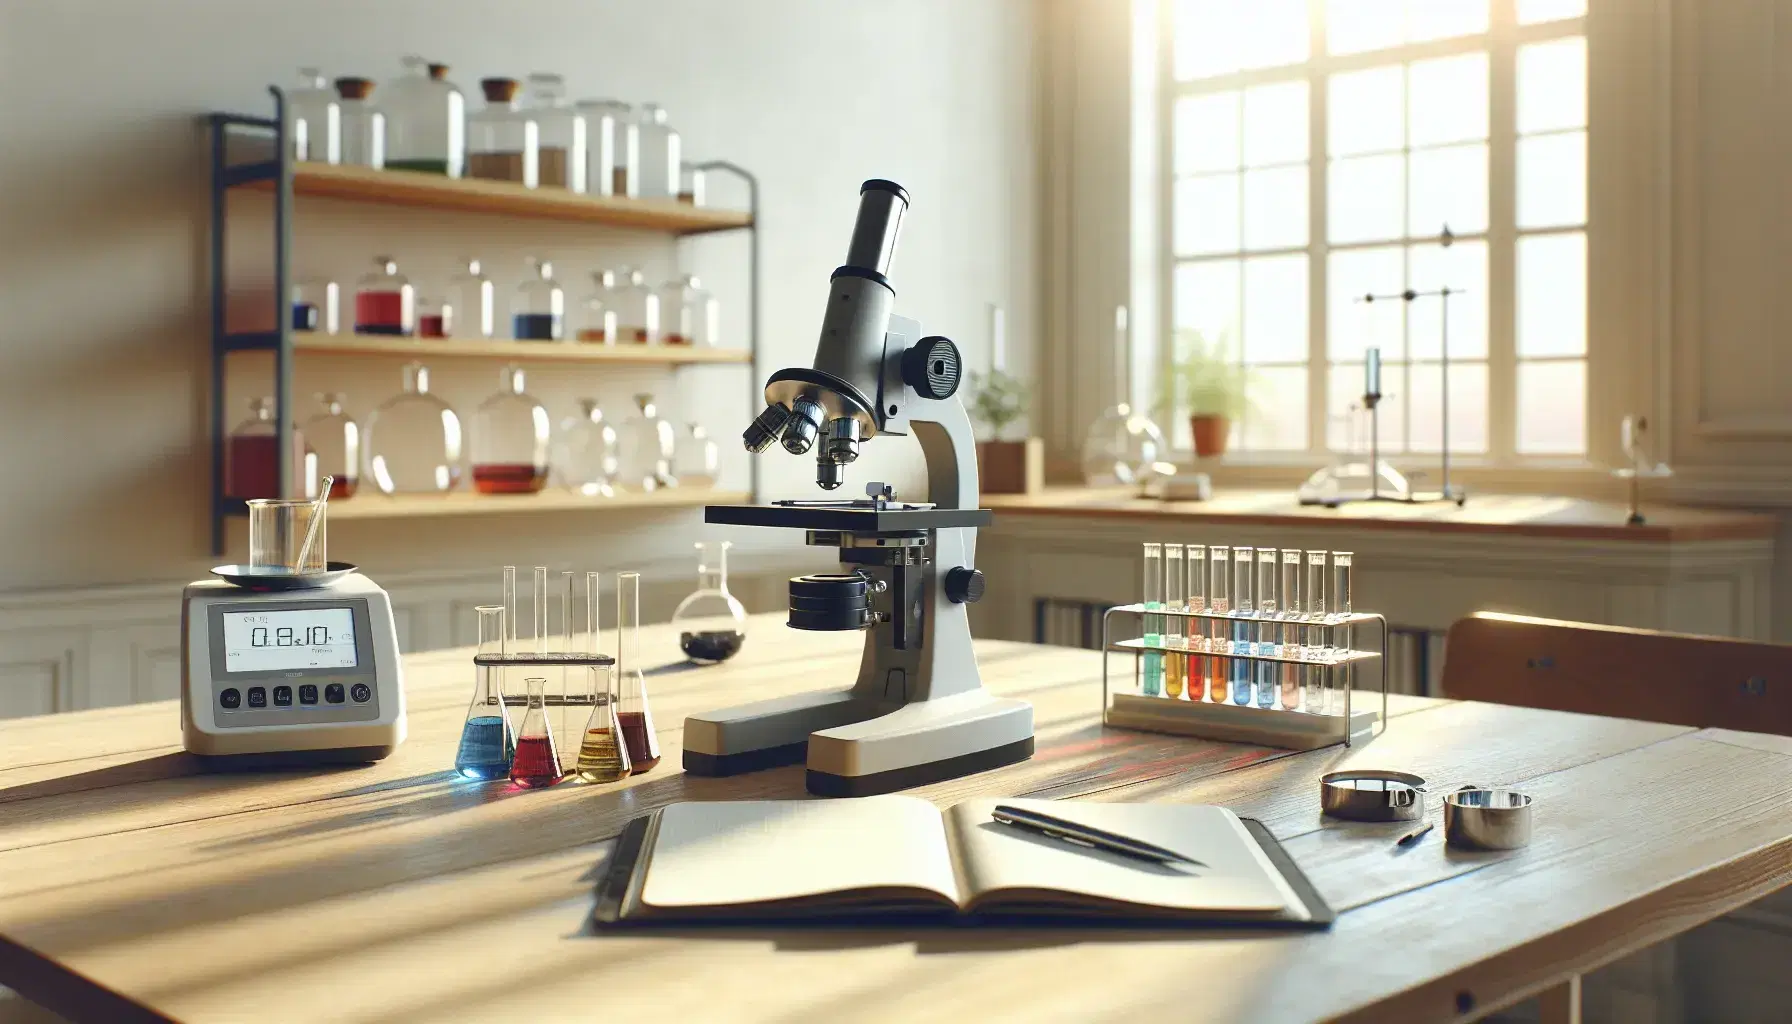 Mesa de laboratorio con microscopio, balanza analítica digital y tubos de ensayo con líquidos de colores bajo luz natural.